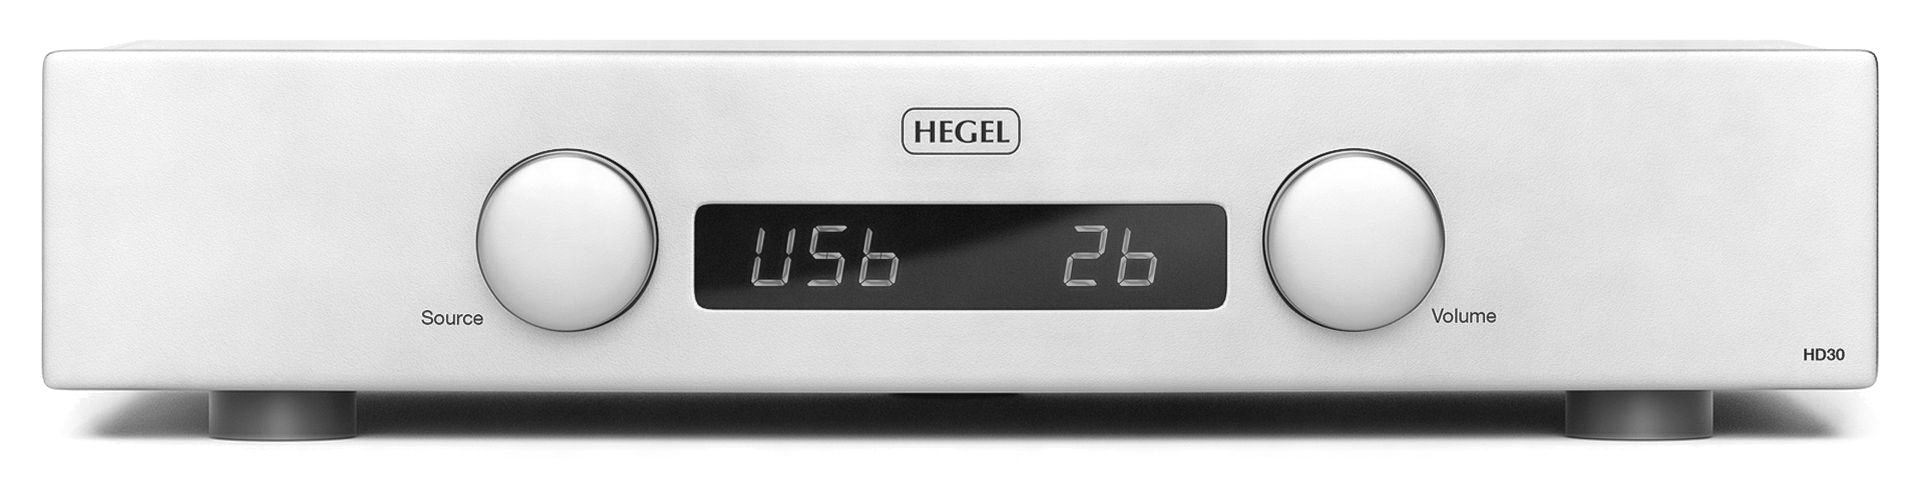 Hegel HD30